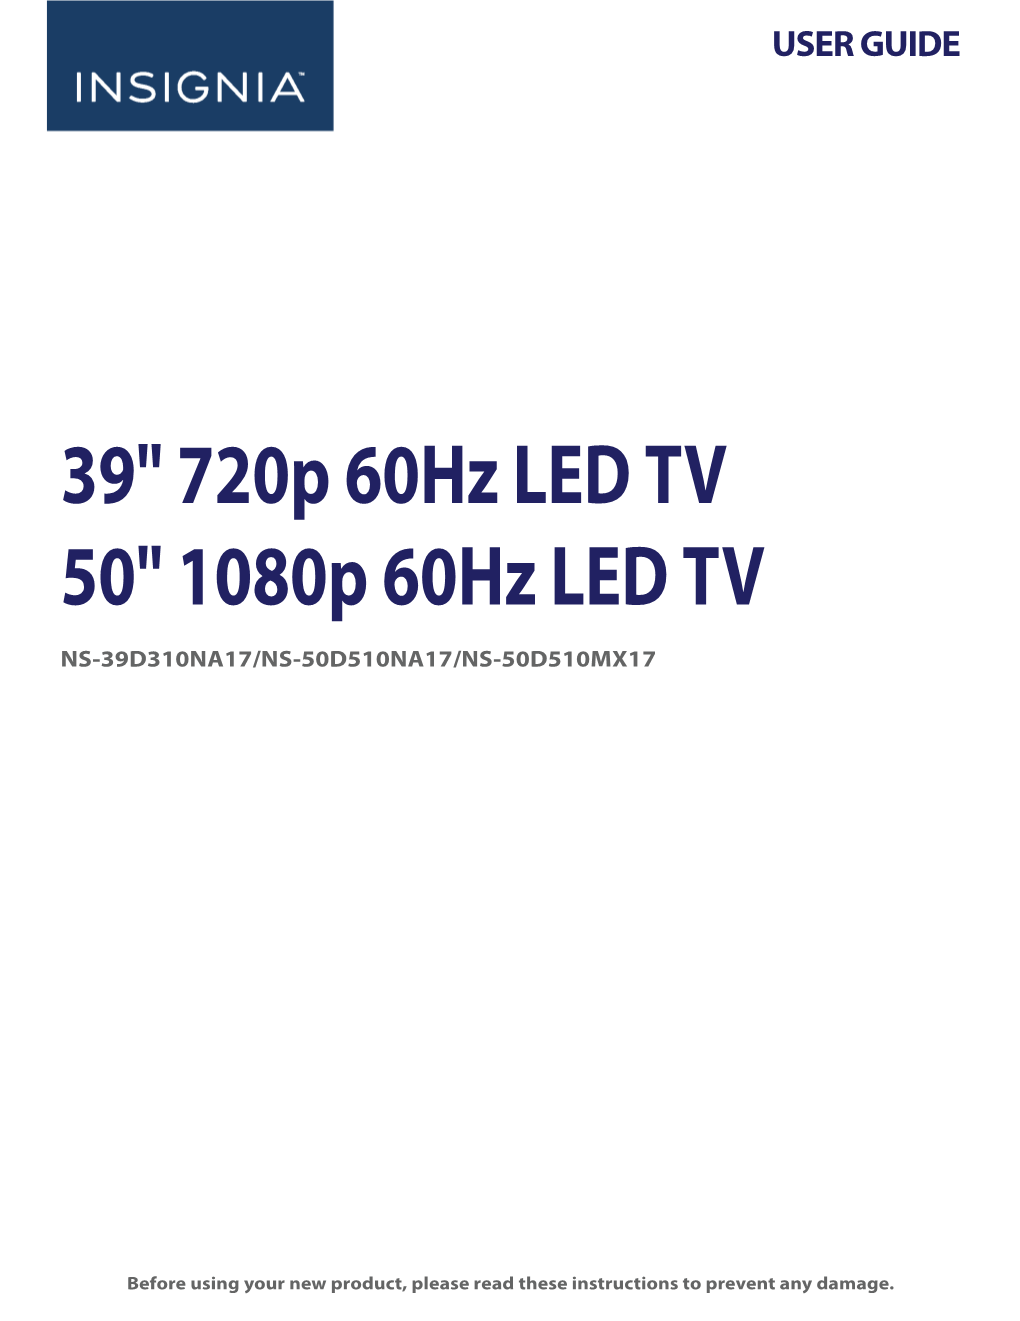 39" 720P 60Hz LED TV 50" 1080P 60Hz LED TV